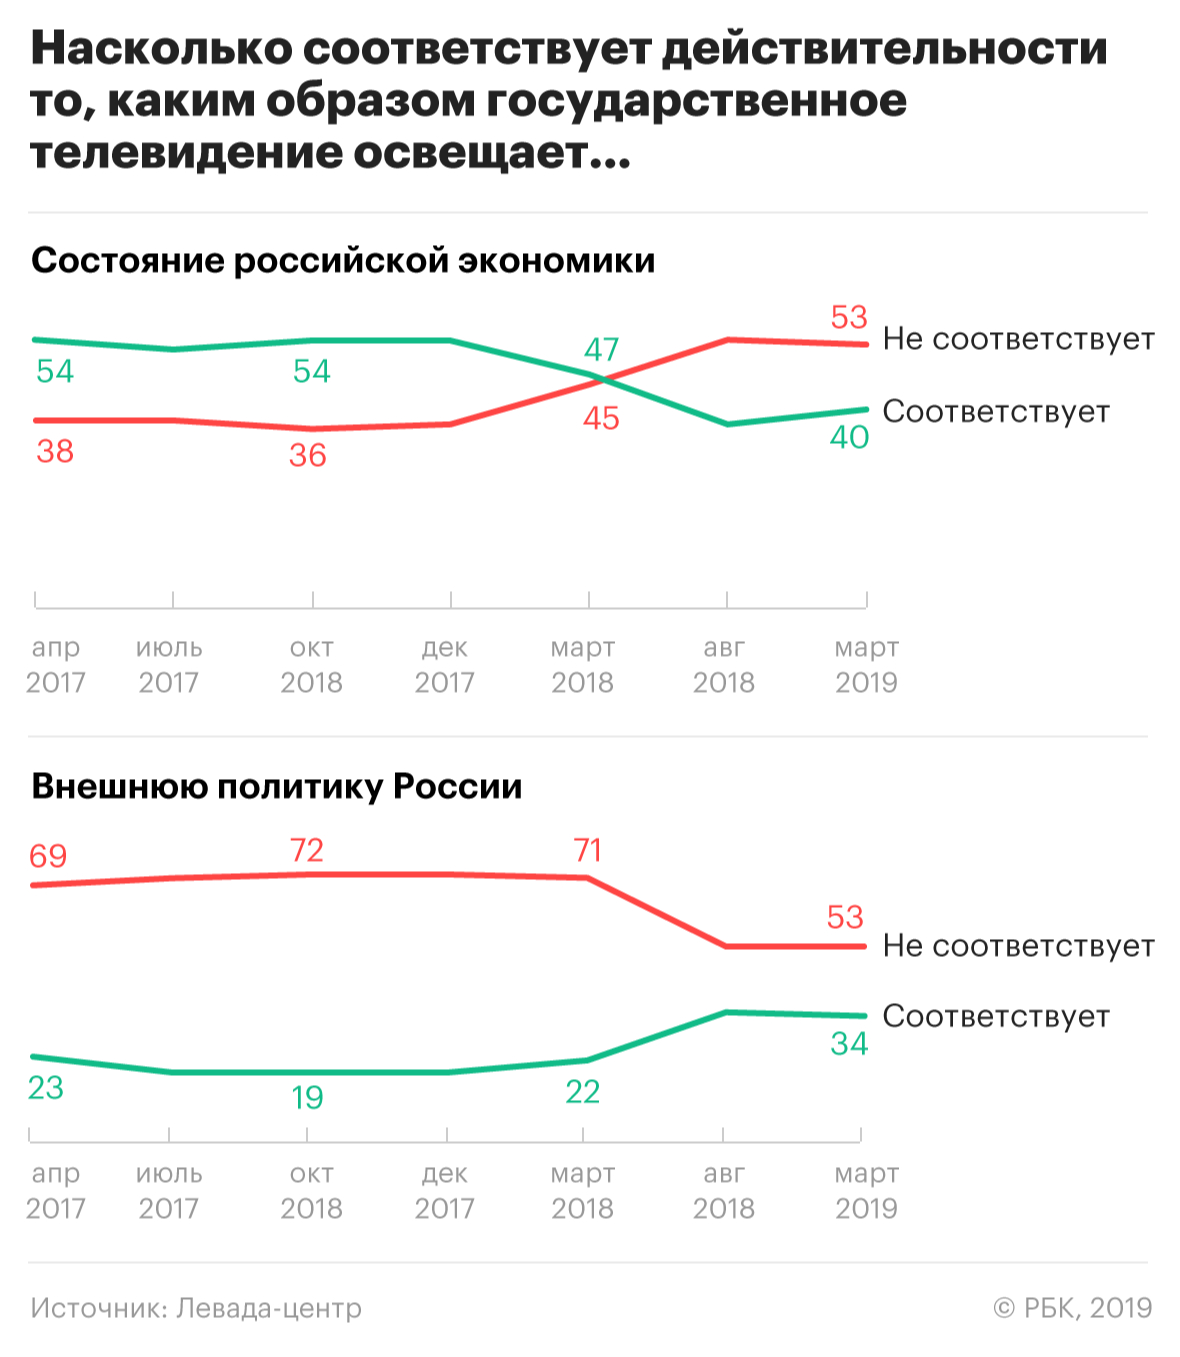 Четверть россиян потеряли доверие к телевидению за десять лет